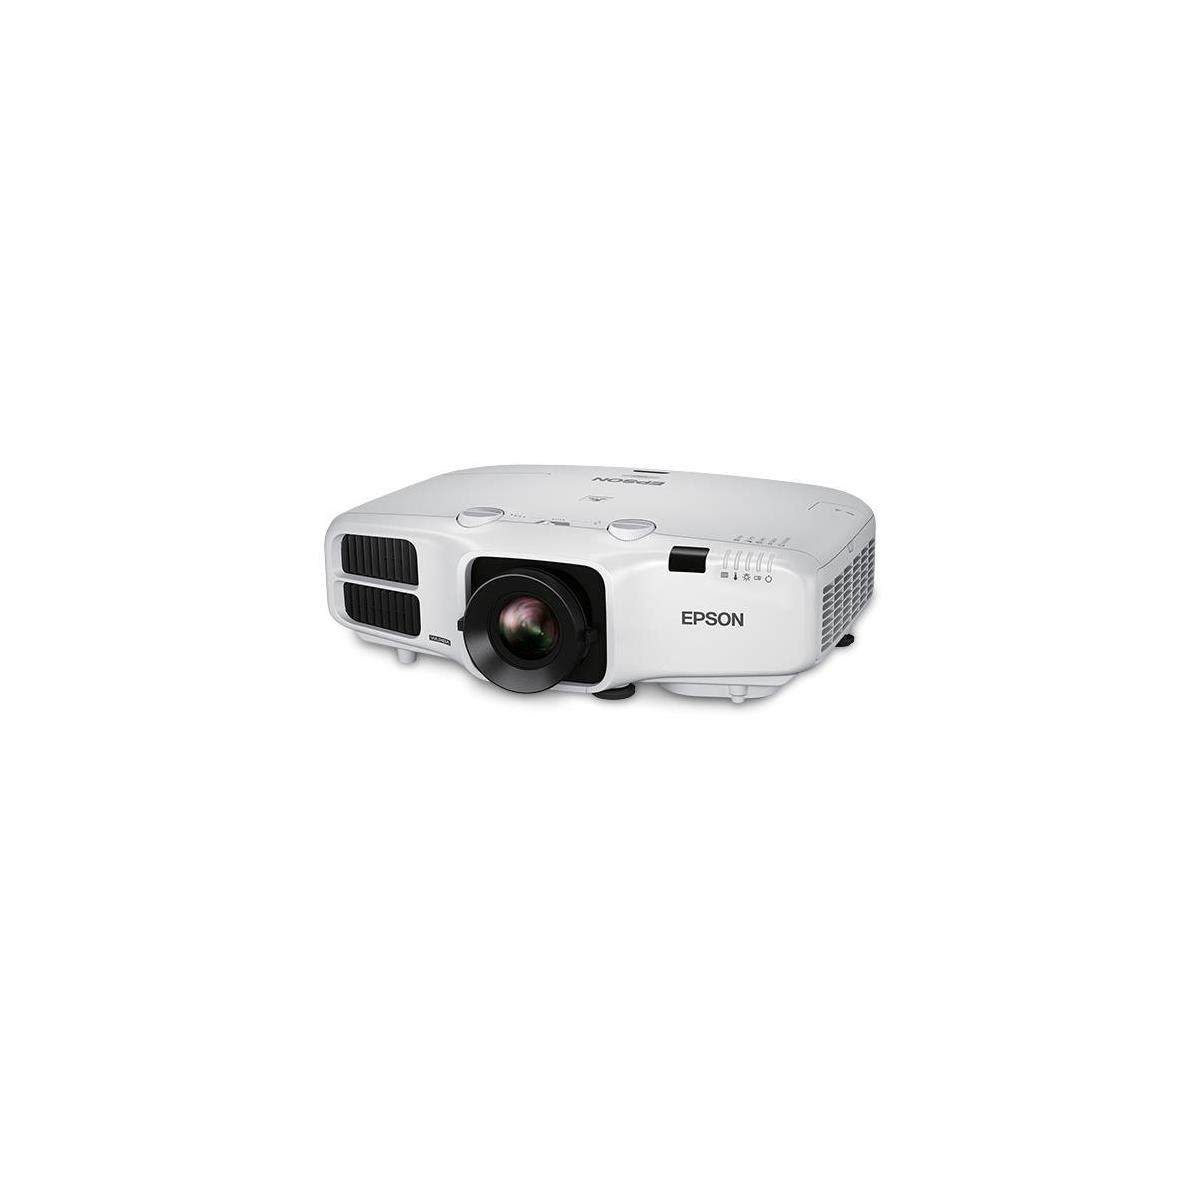 Image of Epson PowerLite 5530U WUXGA 3LCD Projector